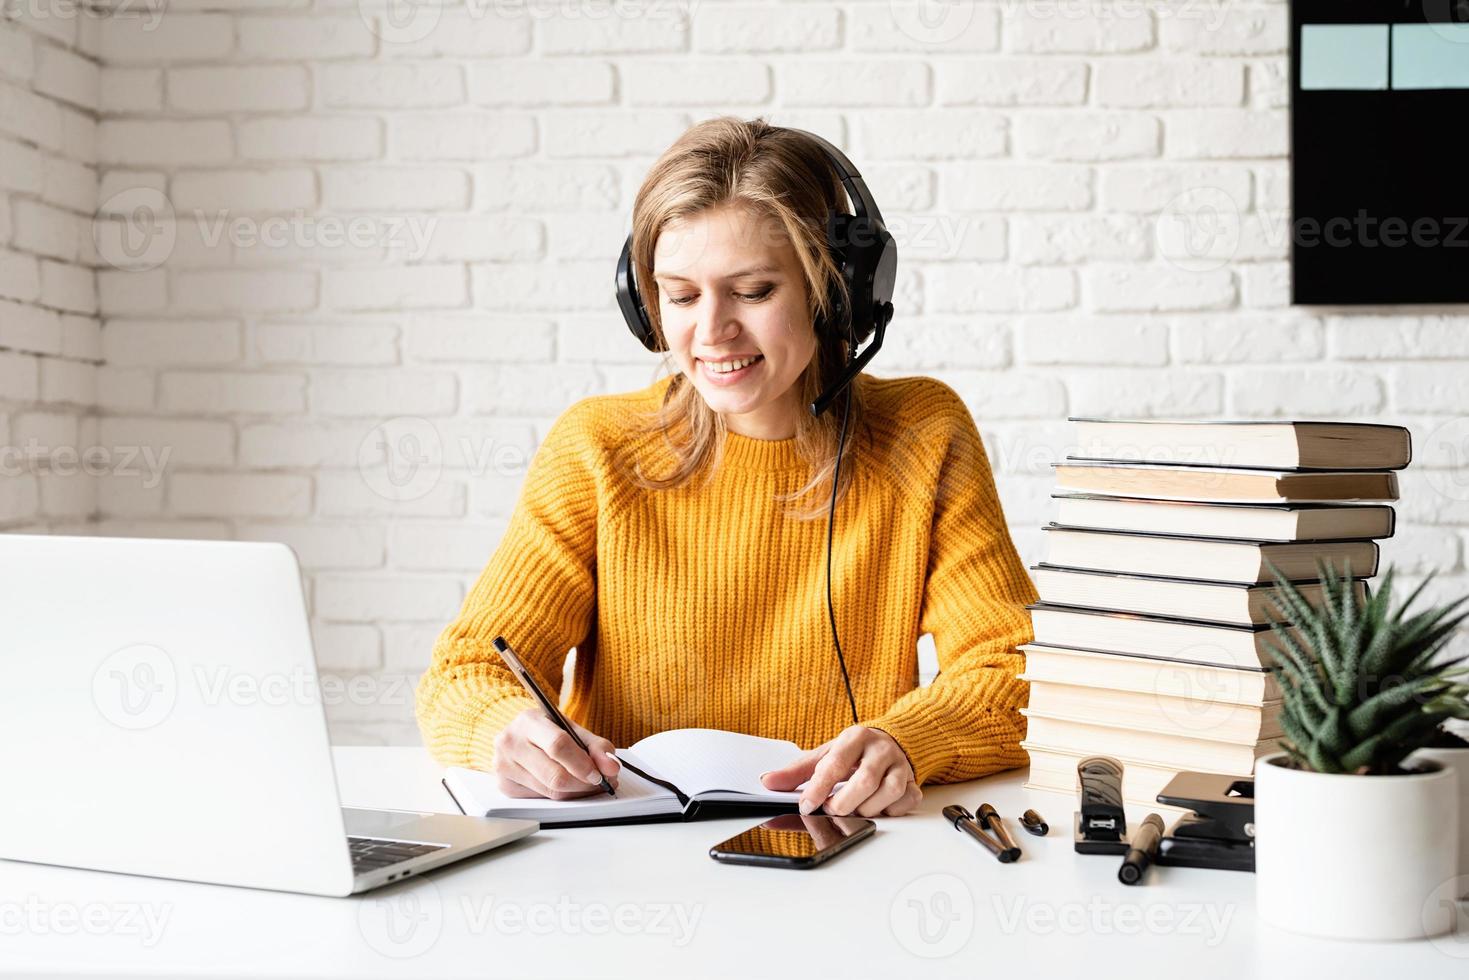 jovem com fones de ouvido pretos estudando on-line usando um laptop foto